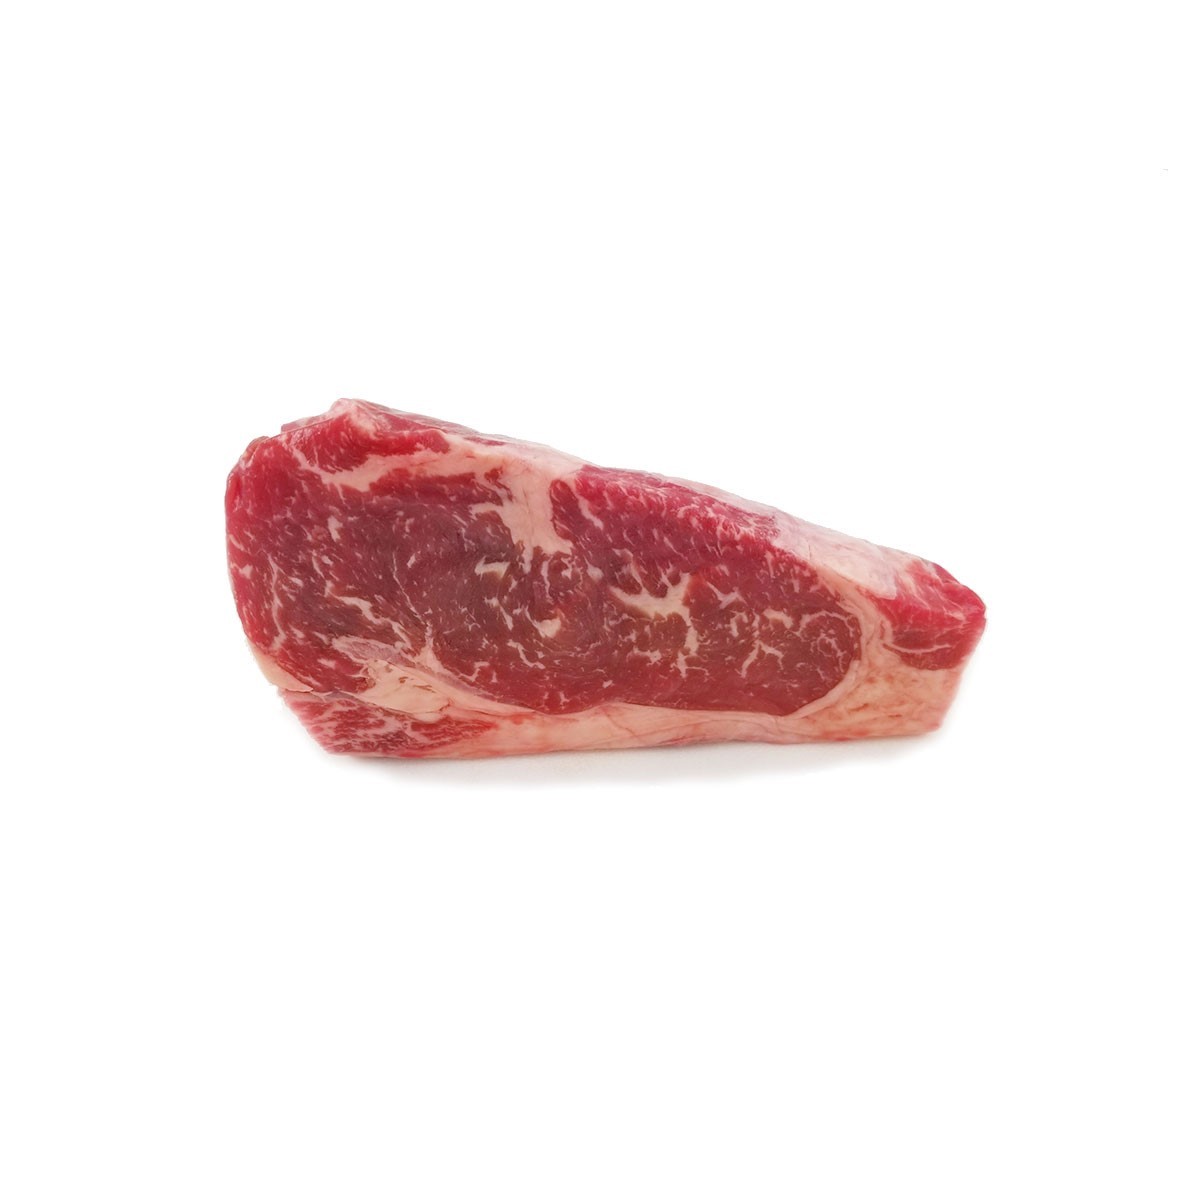 Frozen H.G. Walter Dry Aged (35 days) Sirloin Steak - UK